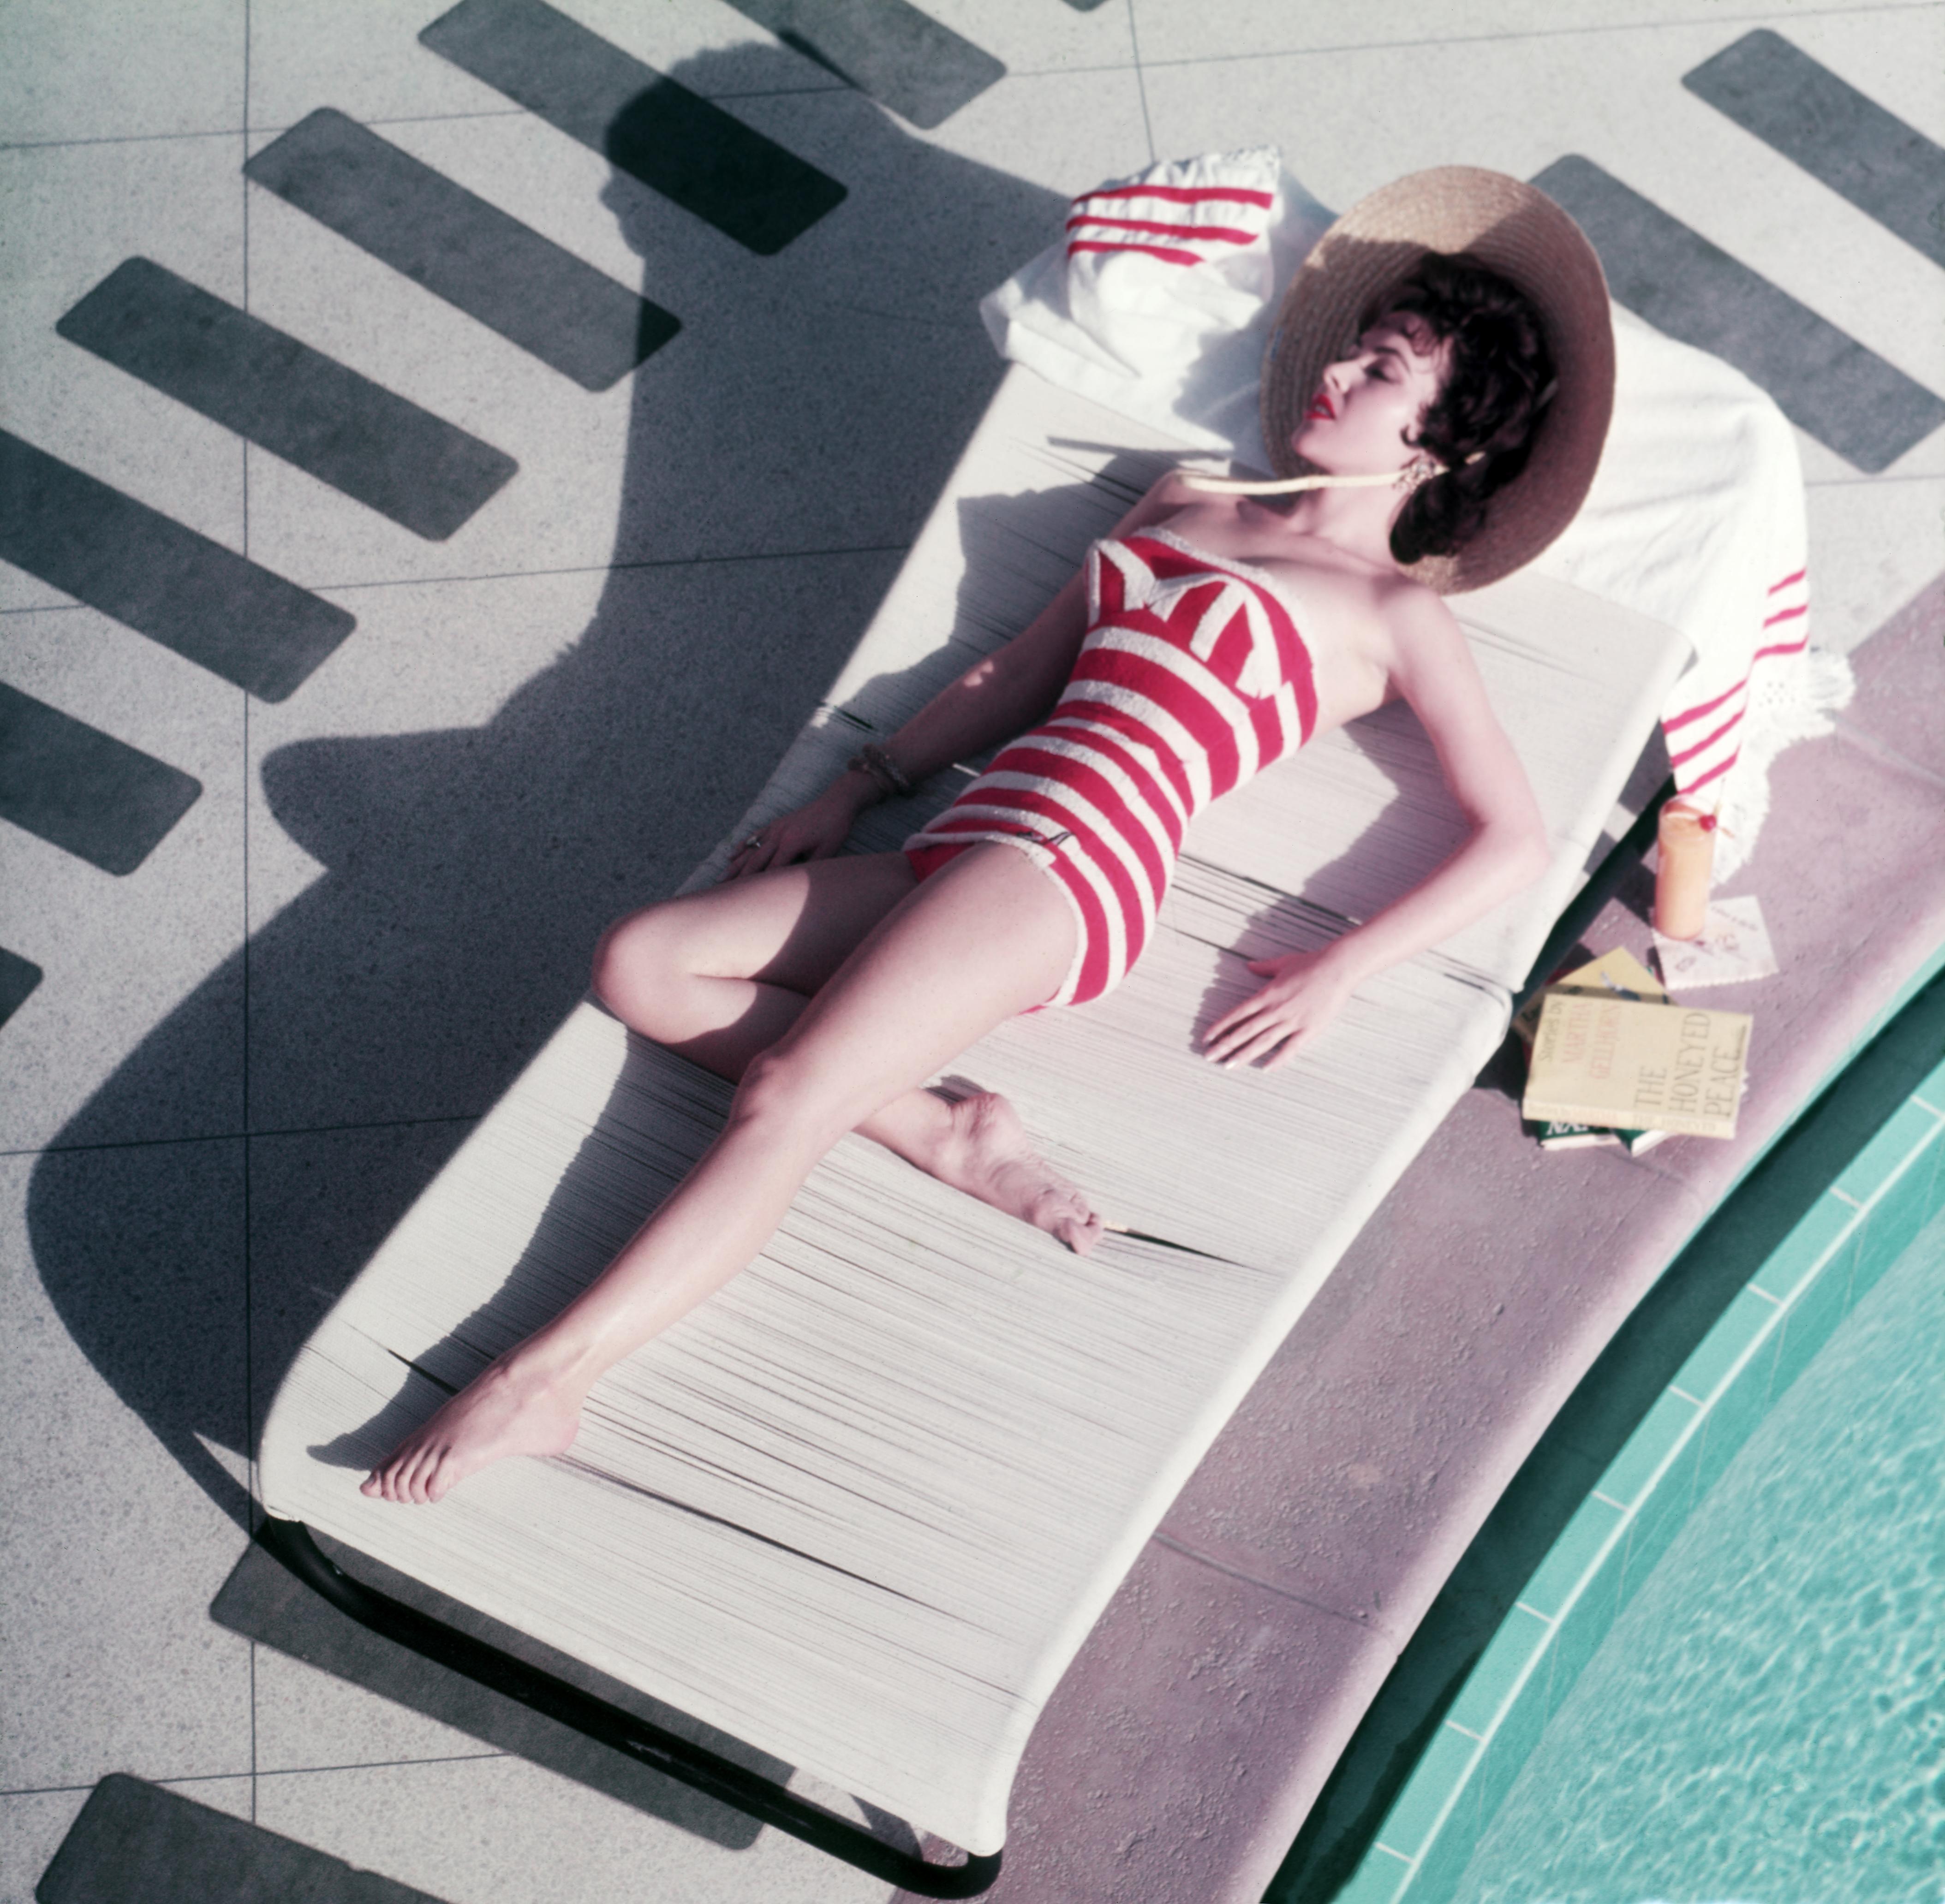 mara Lane At The Sands 1954 Slim Aarons Edition limitée du domaine

L'actrice autrichienne Mara Lane se prélassant au bord de la piscine dans un maillot de bain à rayures rouges et blanches à l'hôtel Sands, Las Vegas, 1954. 

Produit à partir de la